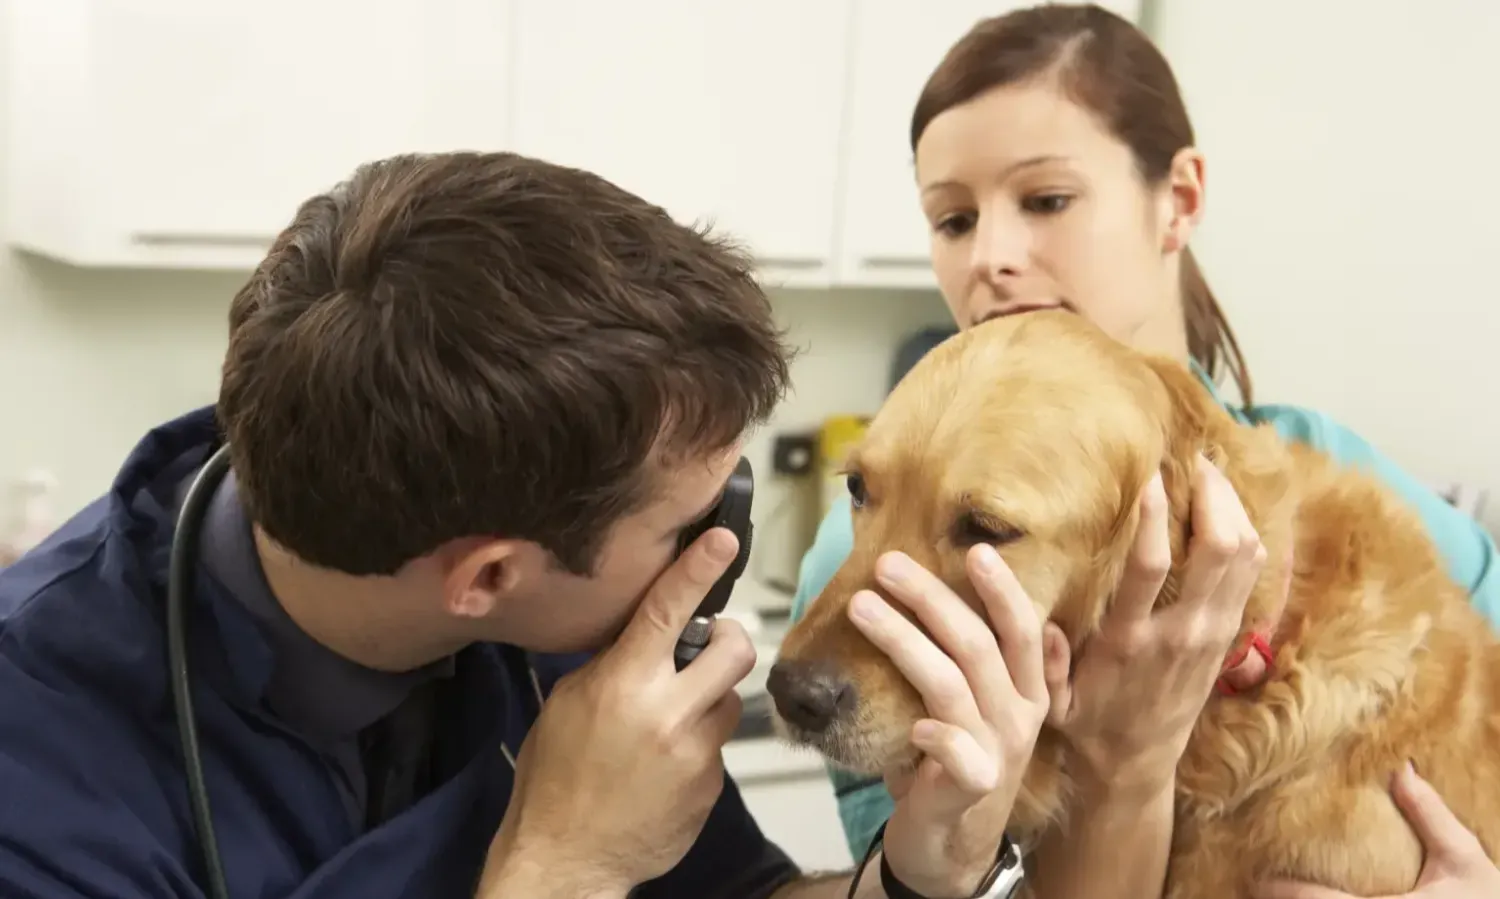 Vet and nurse examining dog